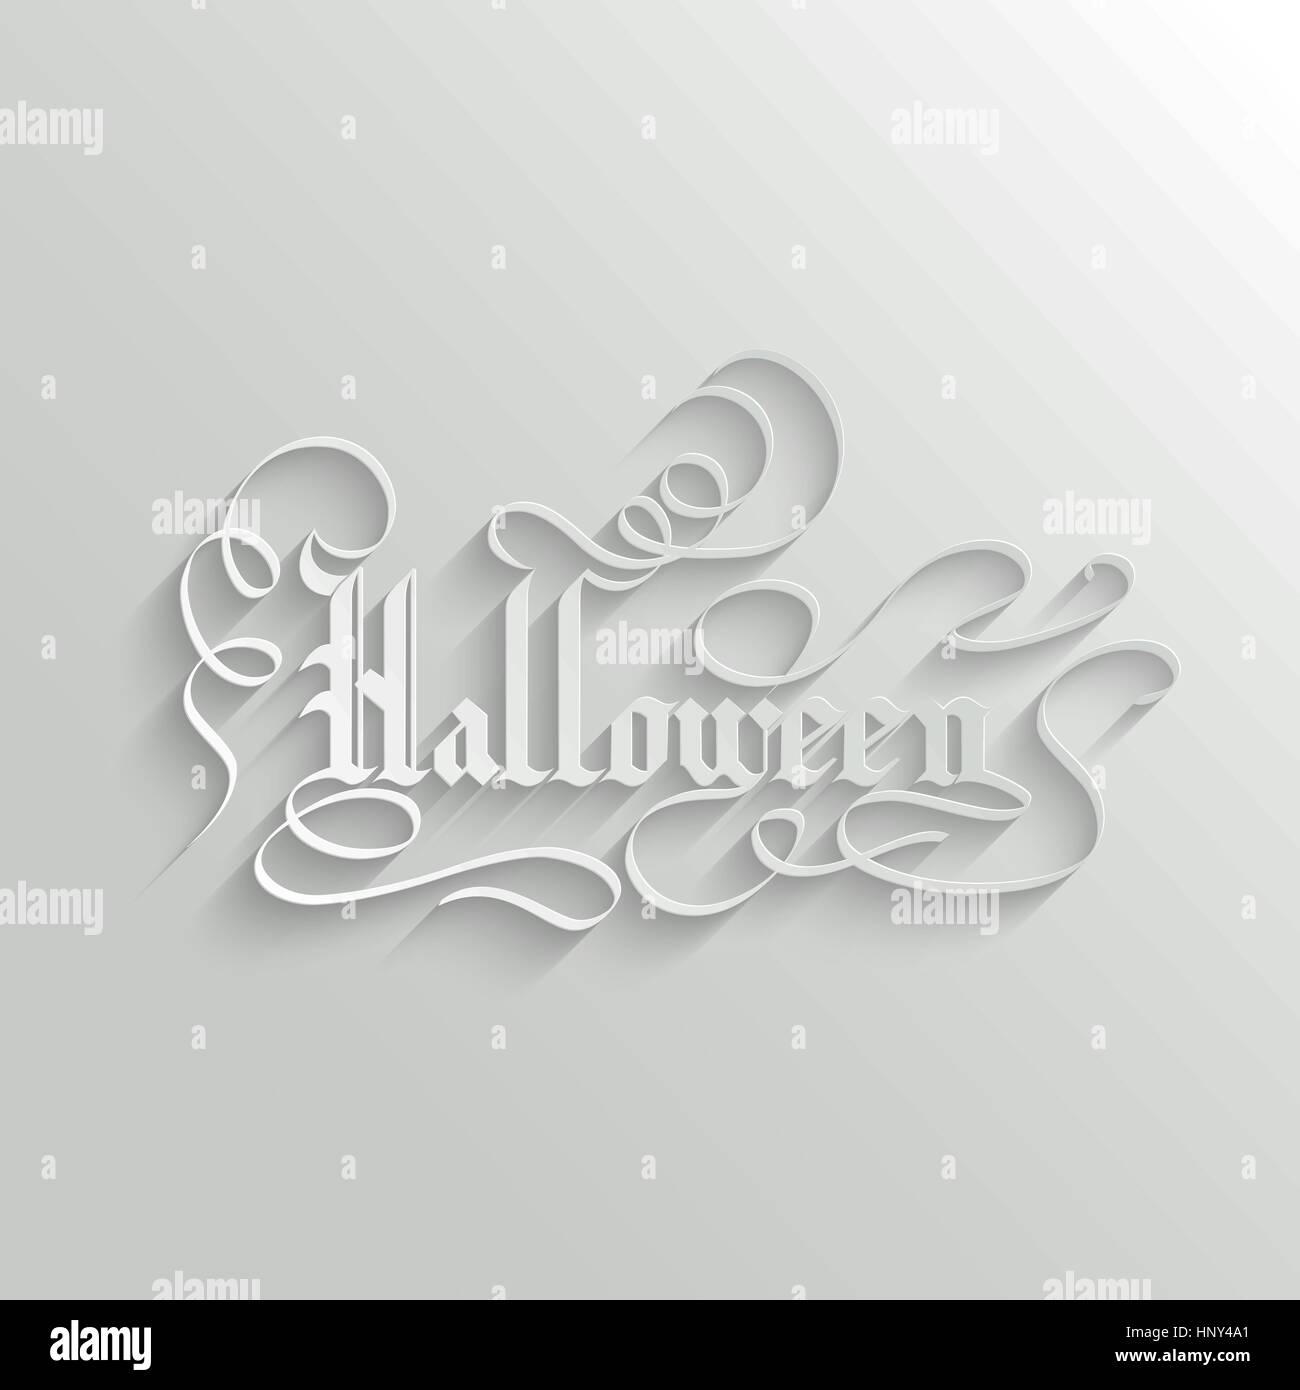 La carte de souhaits lettrage Halloween. Fond vecteur typographiques. Calligraphie faite à la main. Gothic 3d avec ombre Illustration de Vecteur